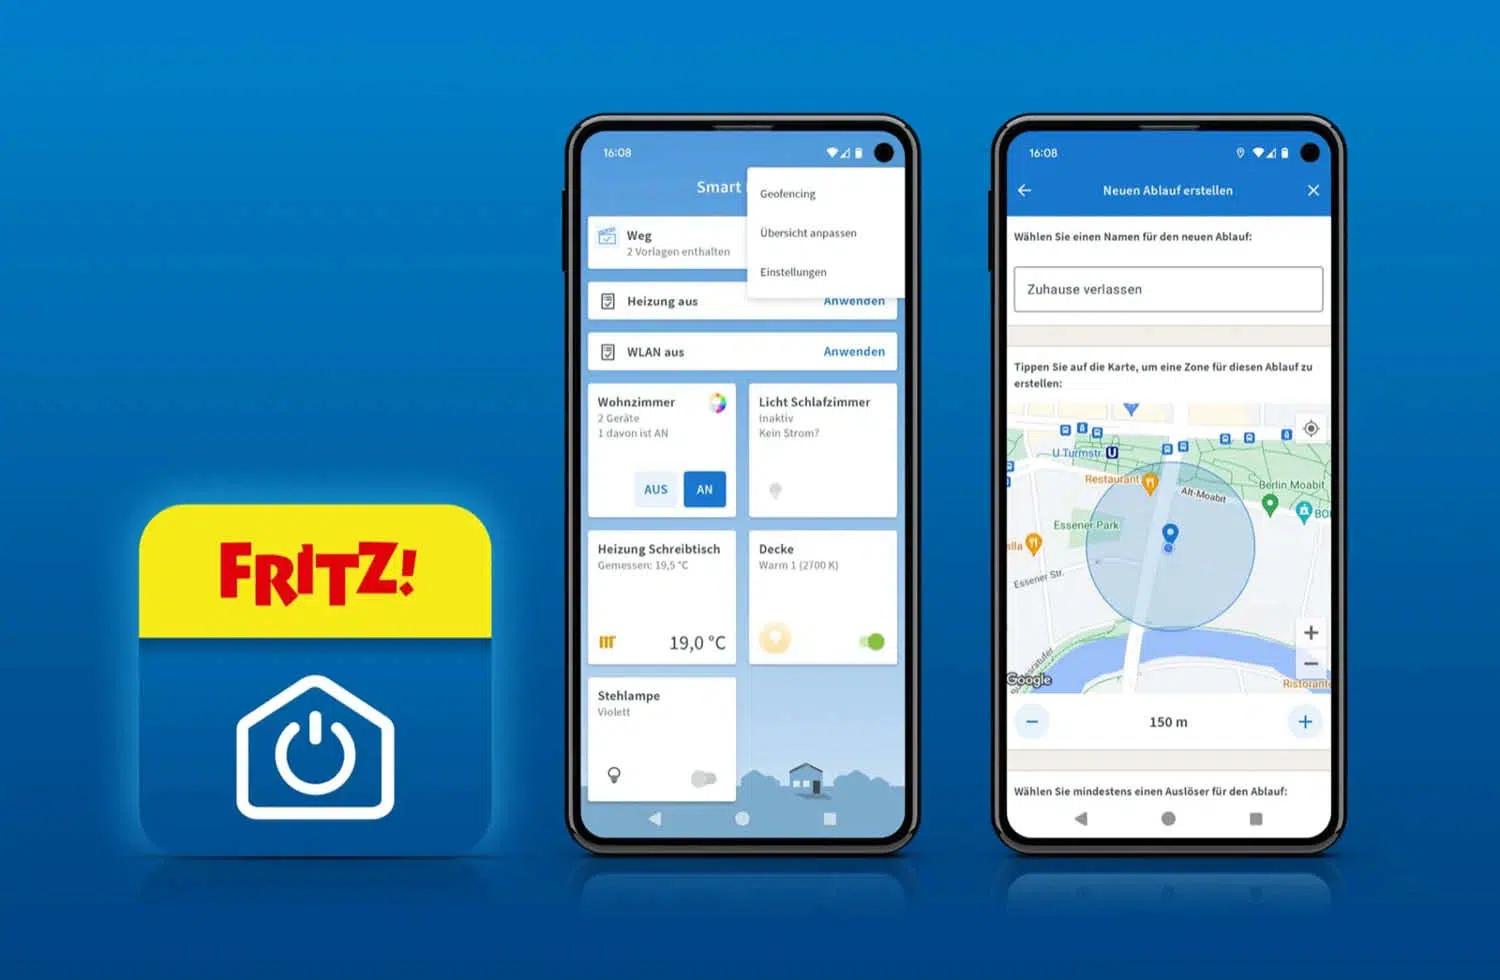 FRITZ!App Smart Home Geofencing